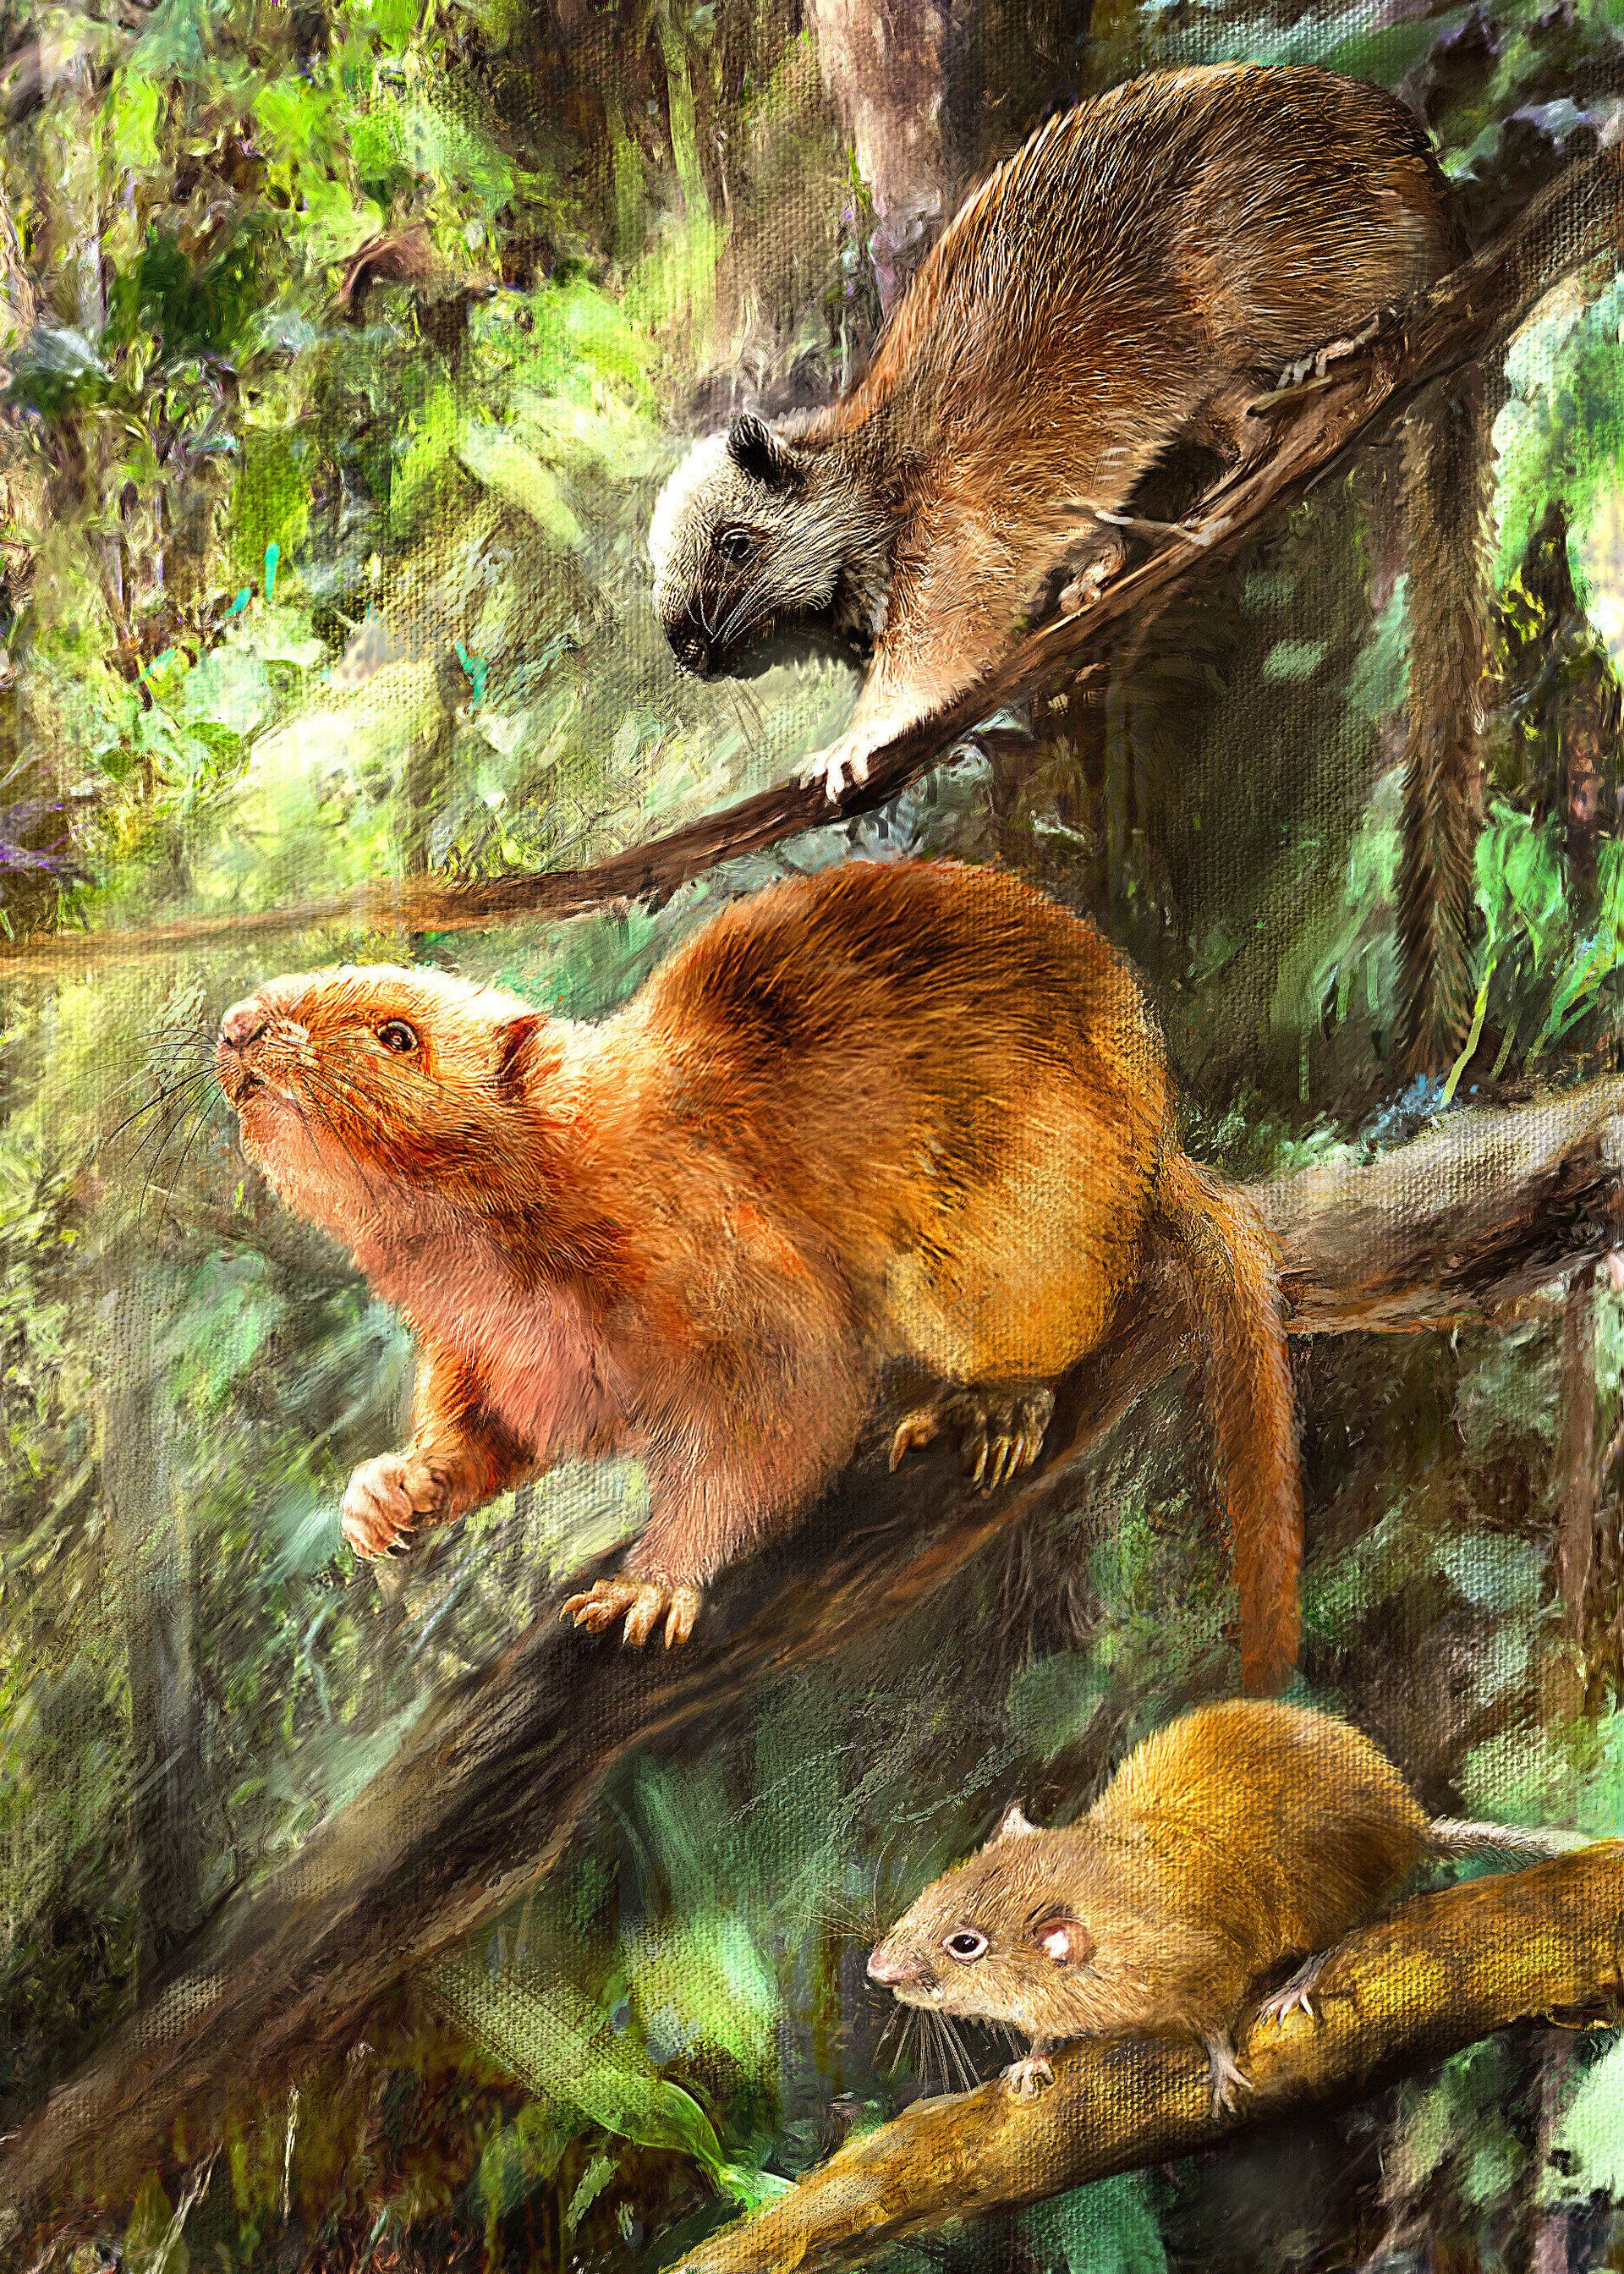 Descobertas 3 novas espécies de roedores gigantes que eram comidos por ancestrais humanos (FOTO) - Sputnik Brasil, 1920, 23.04.2021